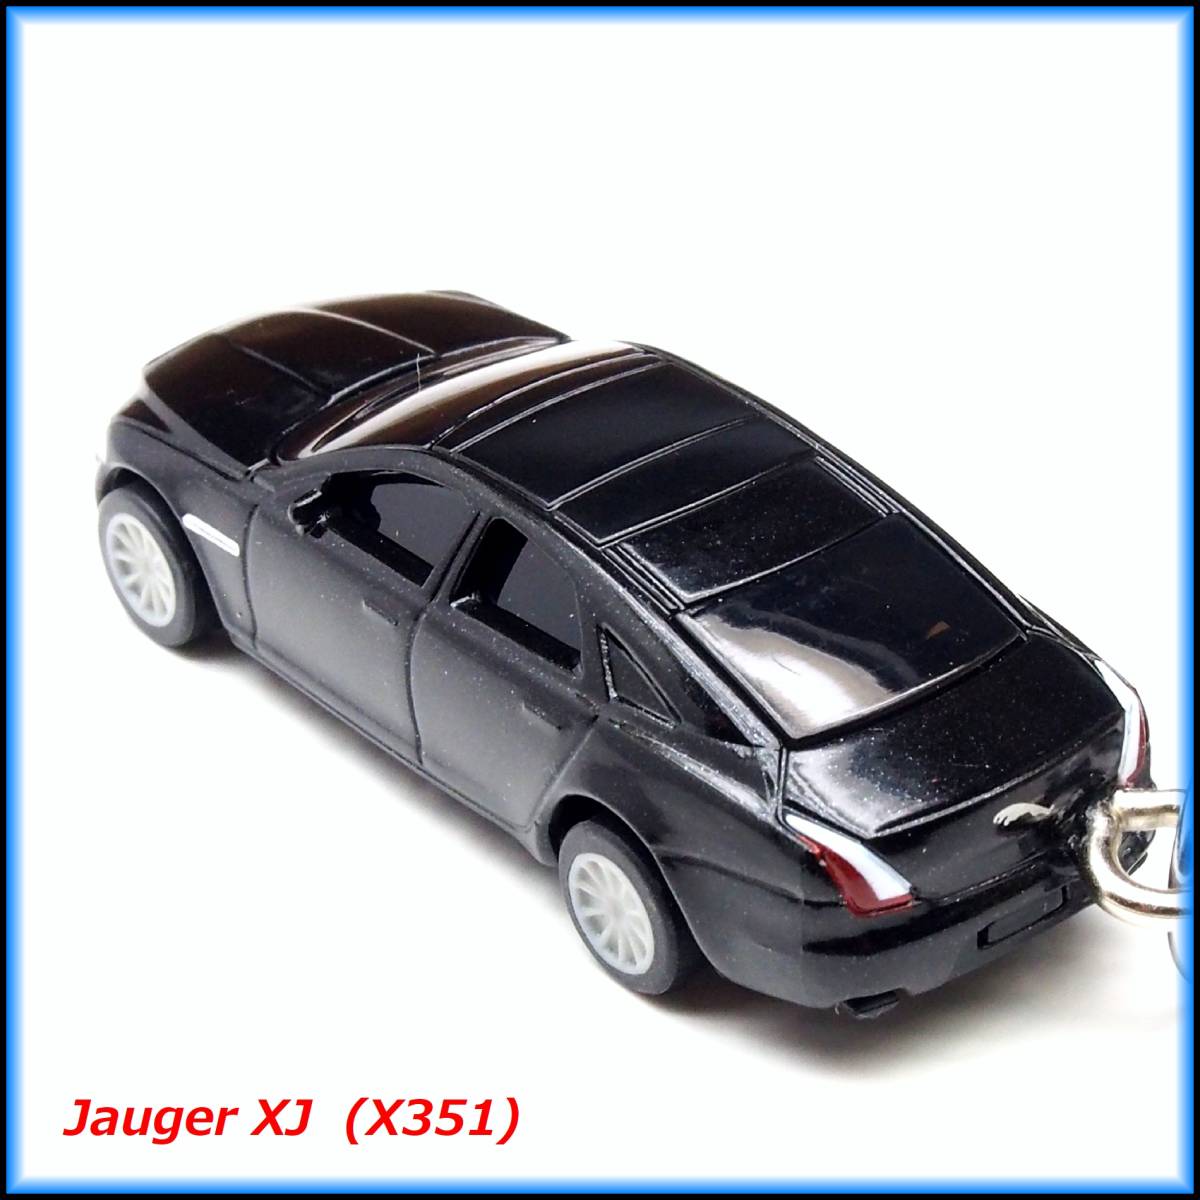  Jaguar XJ J12 миникар ремешок брелок для ключа BBS muffler колесо обвес дерево спойлер "губа" подвеска амортизатор сиденье руль 